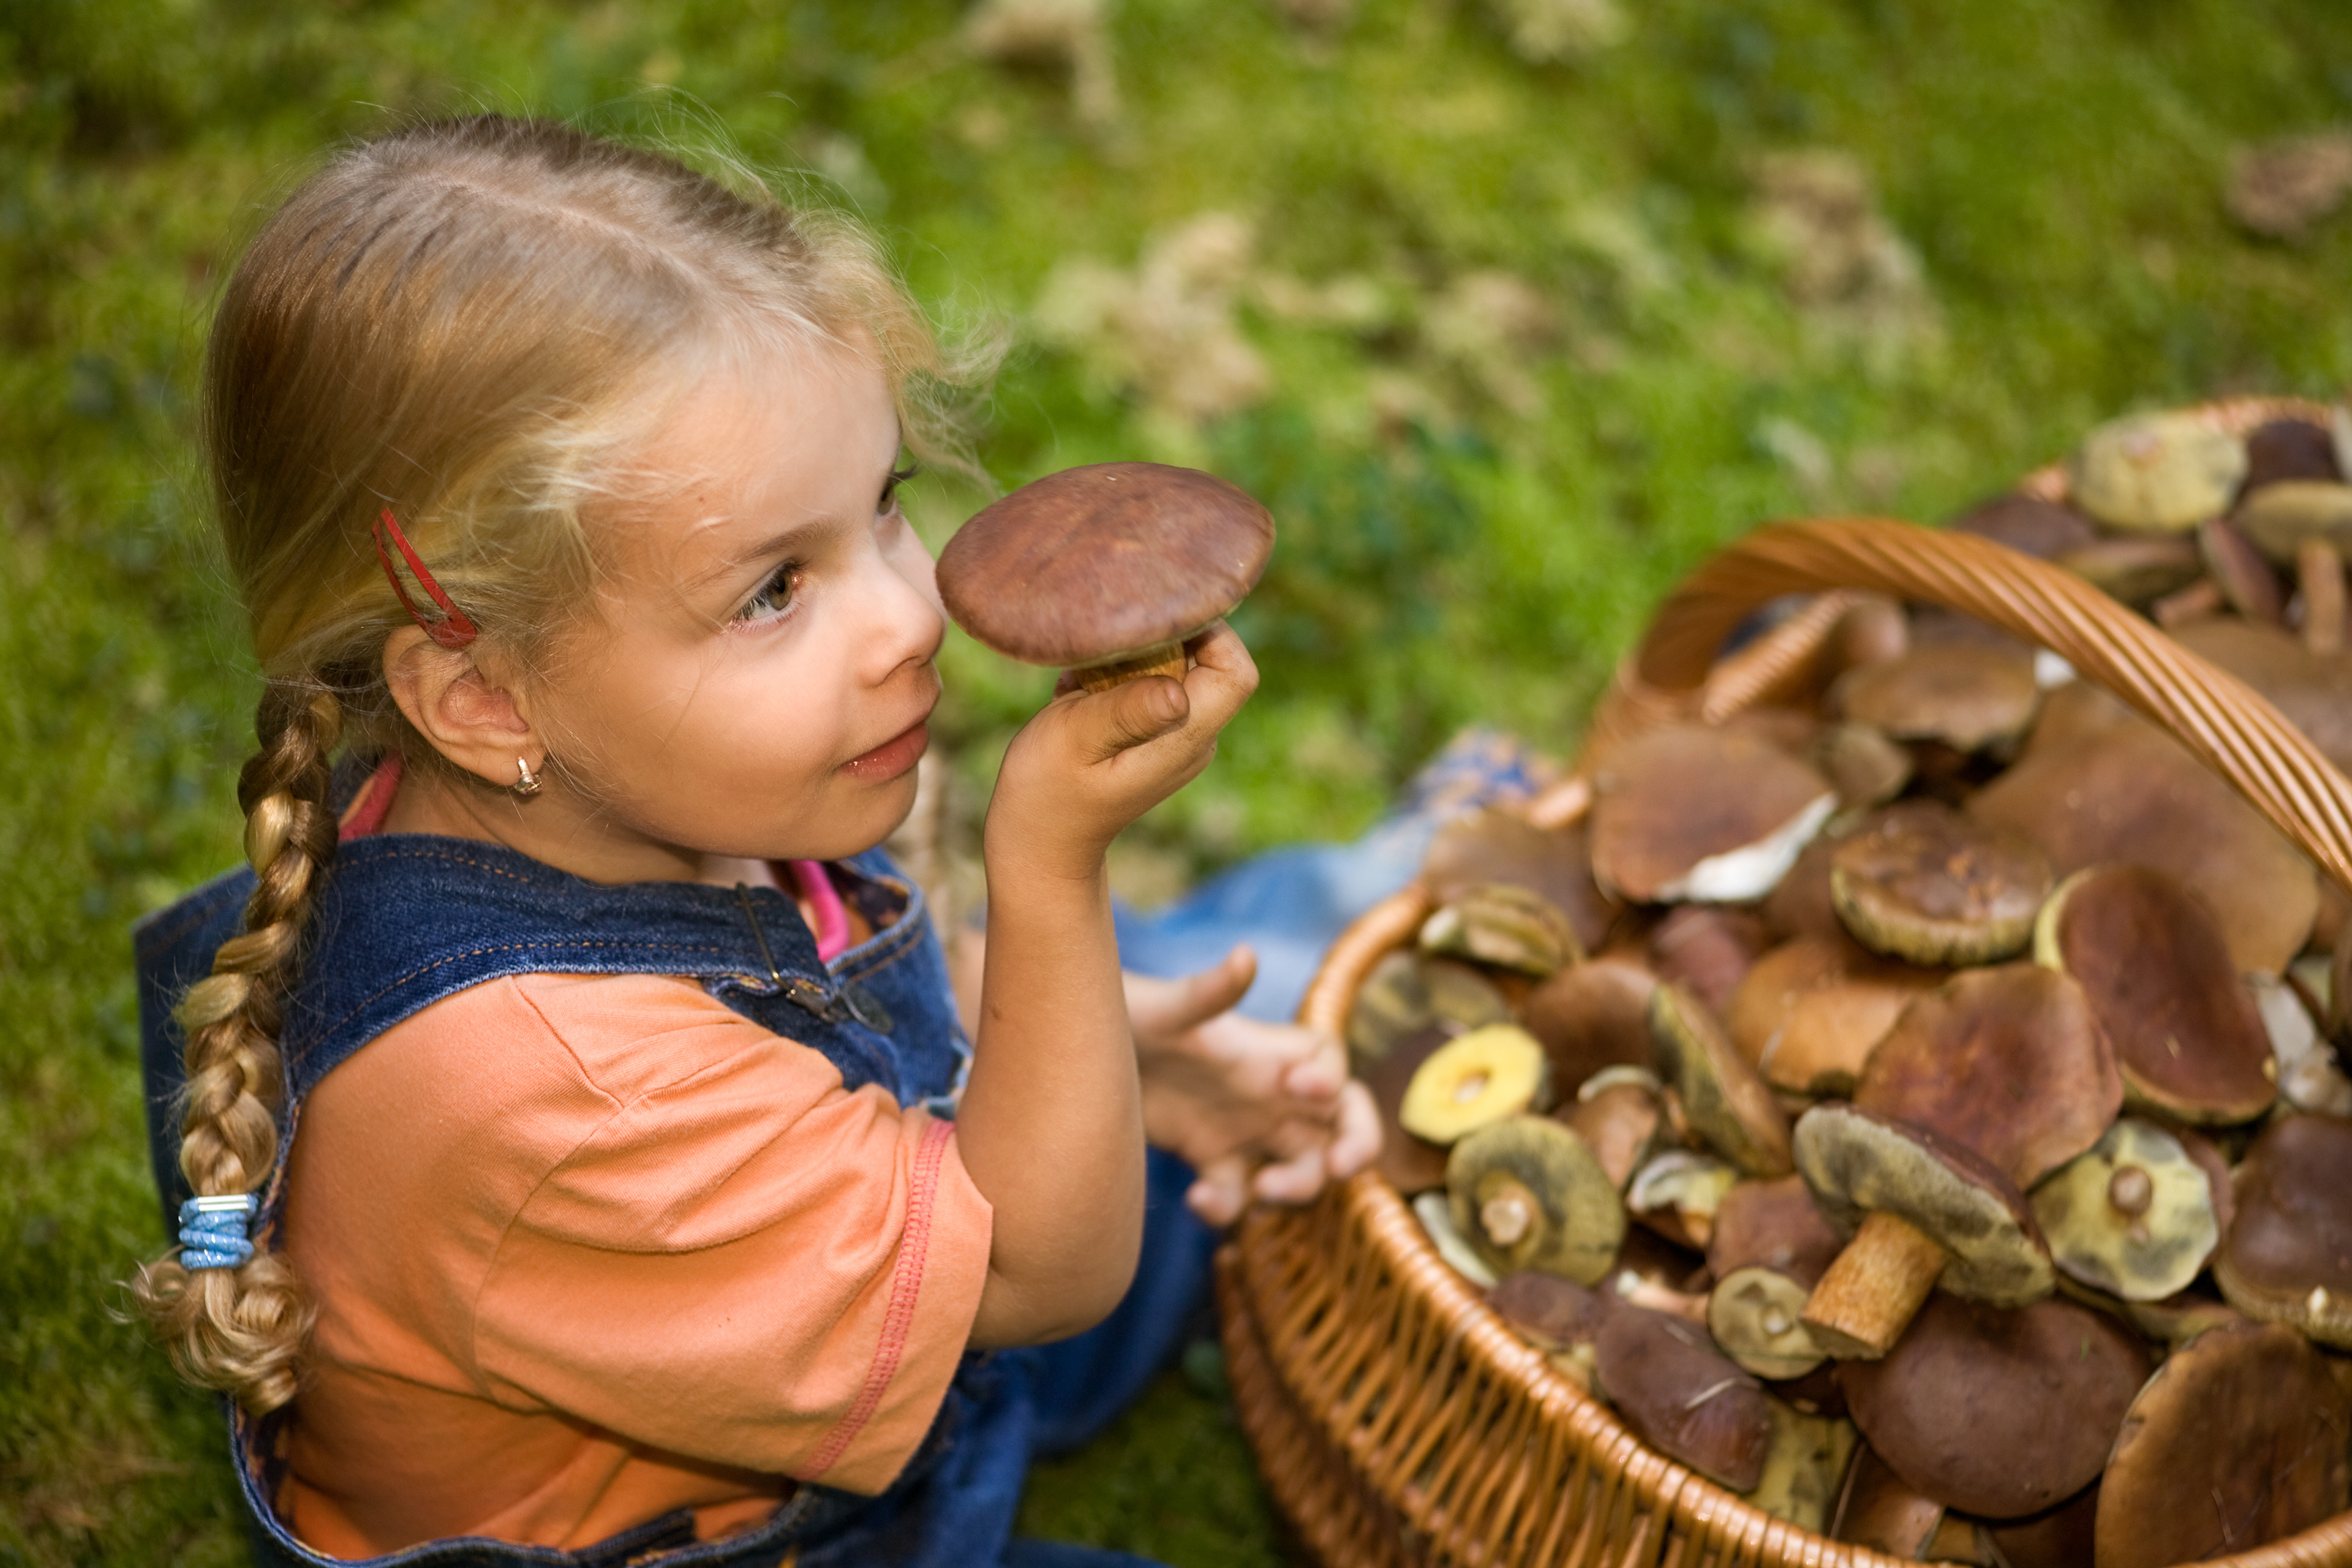 kleines Mädchen mit einem Korb voller Pilze